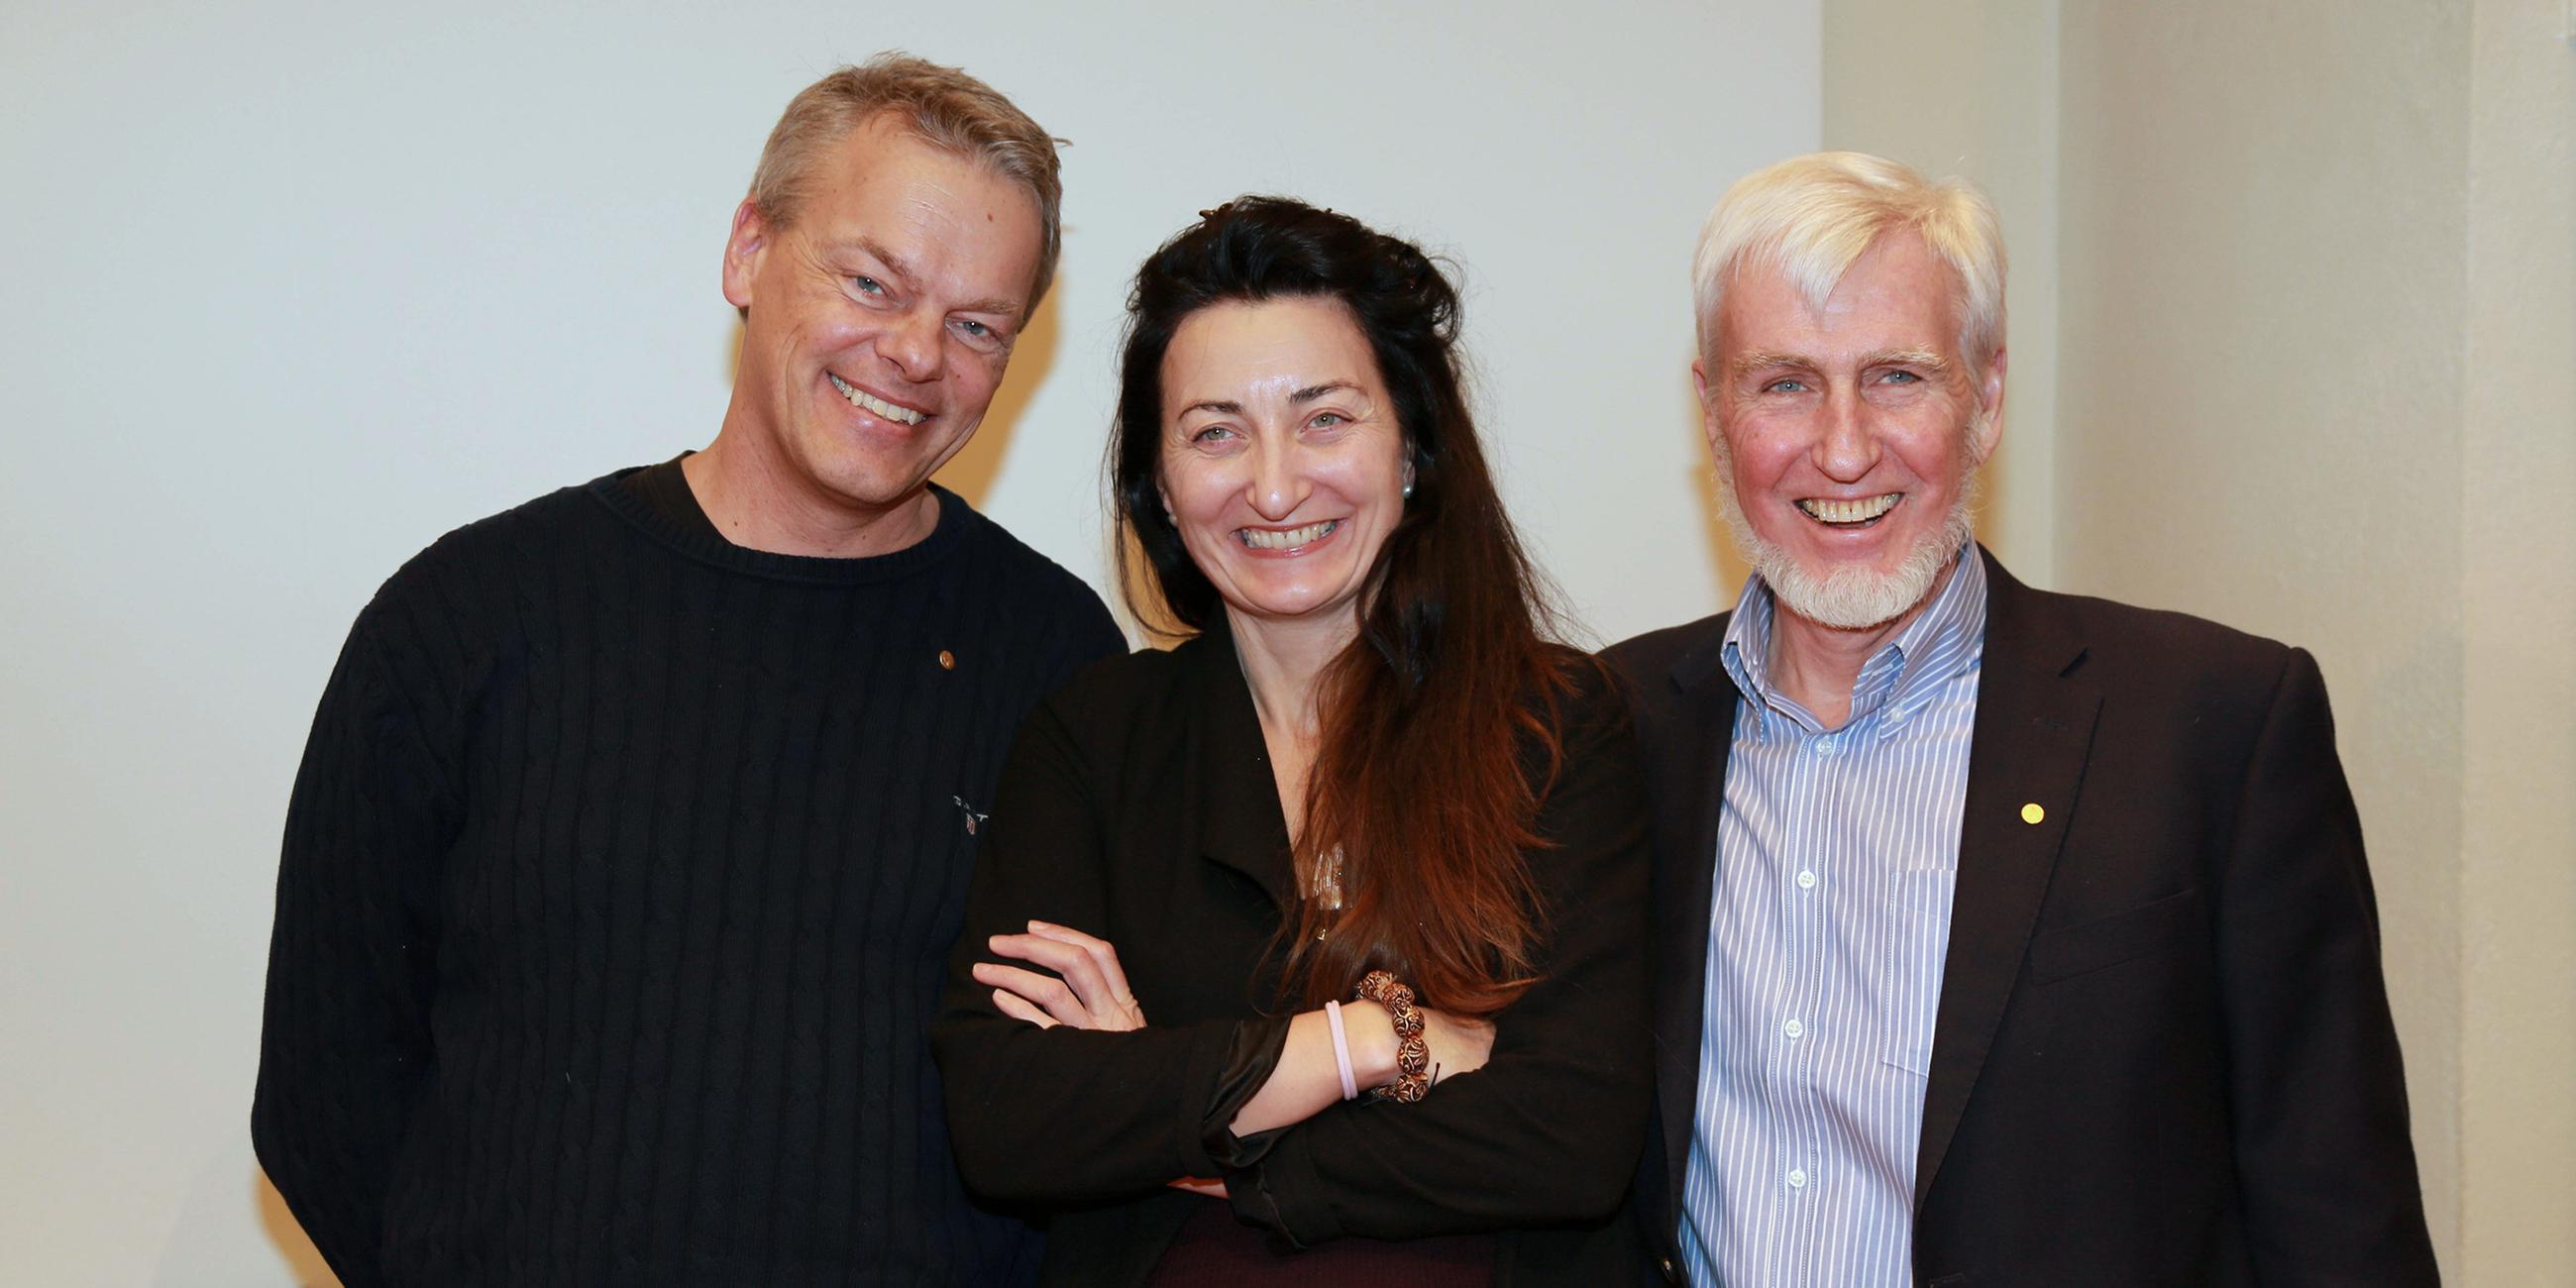 Das norwegische Ehepaar May-Britt und Edvard Moser sowie John O'Keefe (USA/Großbritannien) für die Entdeckung eines Navis im Hirn.